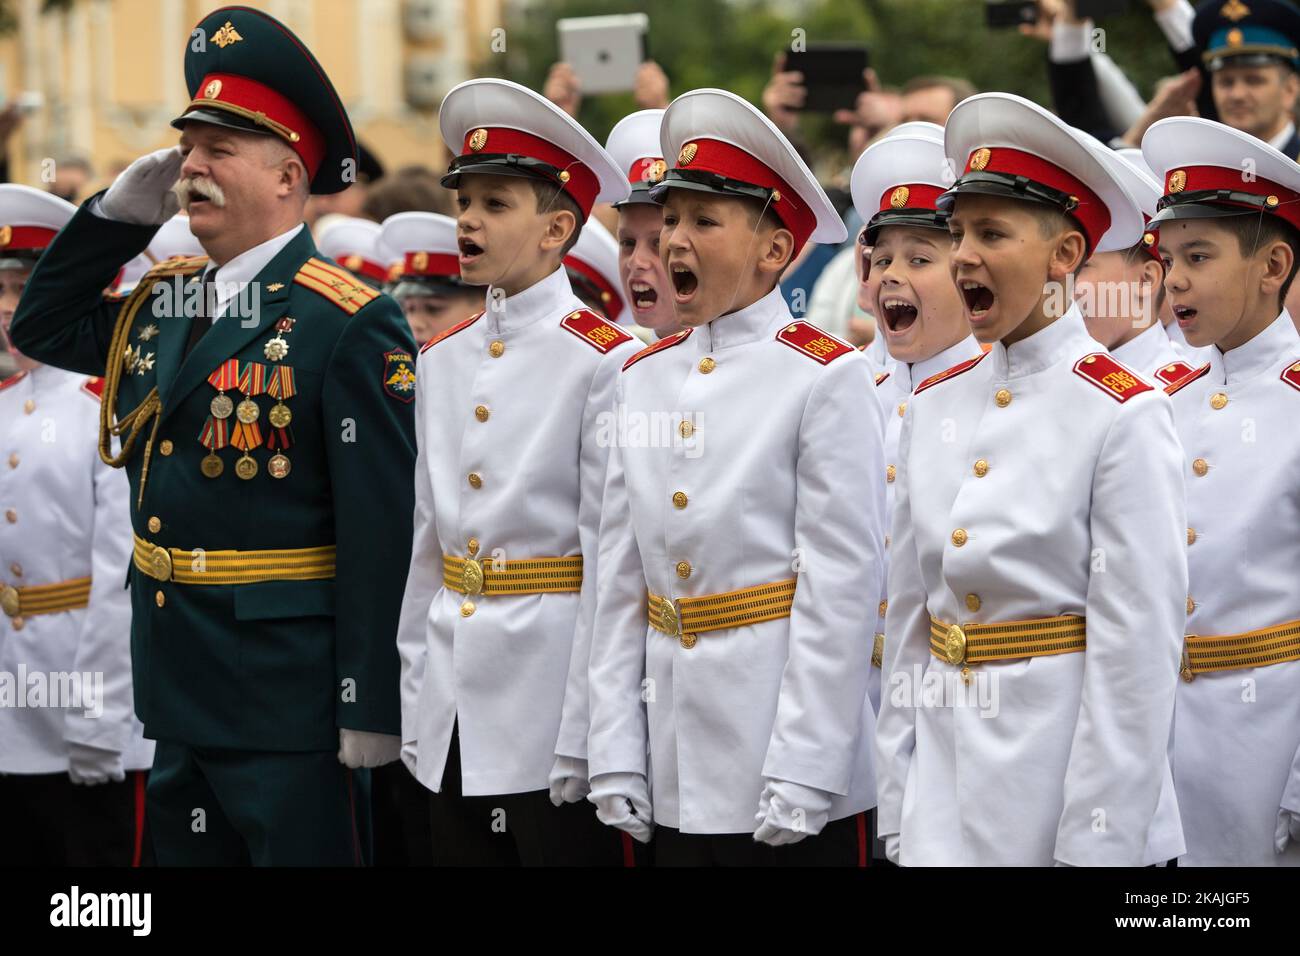 Les cadets de l'École militaire de Suvorov assistent à une cérémonie au début de l'année scolaire, connue sous le nom de « Journée de la connaissance » à Saint-Pétersbourg, sur 1 septembre 2016. Les écoles militaires de Suvorov sont un type d'école pour les garçons de 14-18 ans, et portent le nom du grand général de 18th siècle Alexandre Suvorov. Banque D'Images